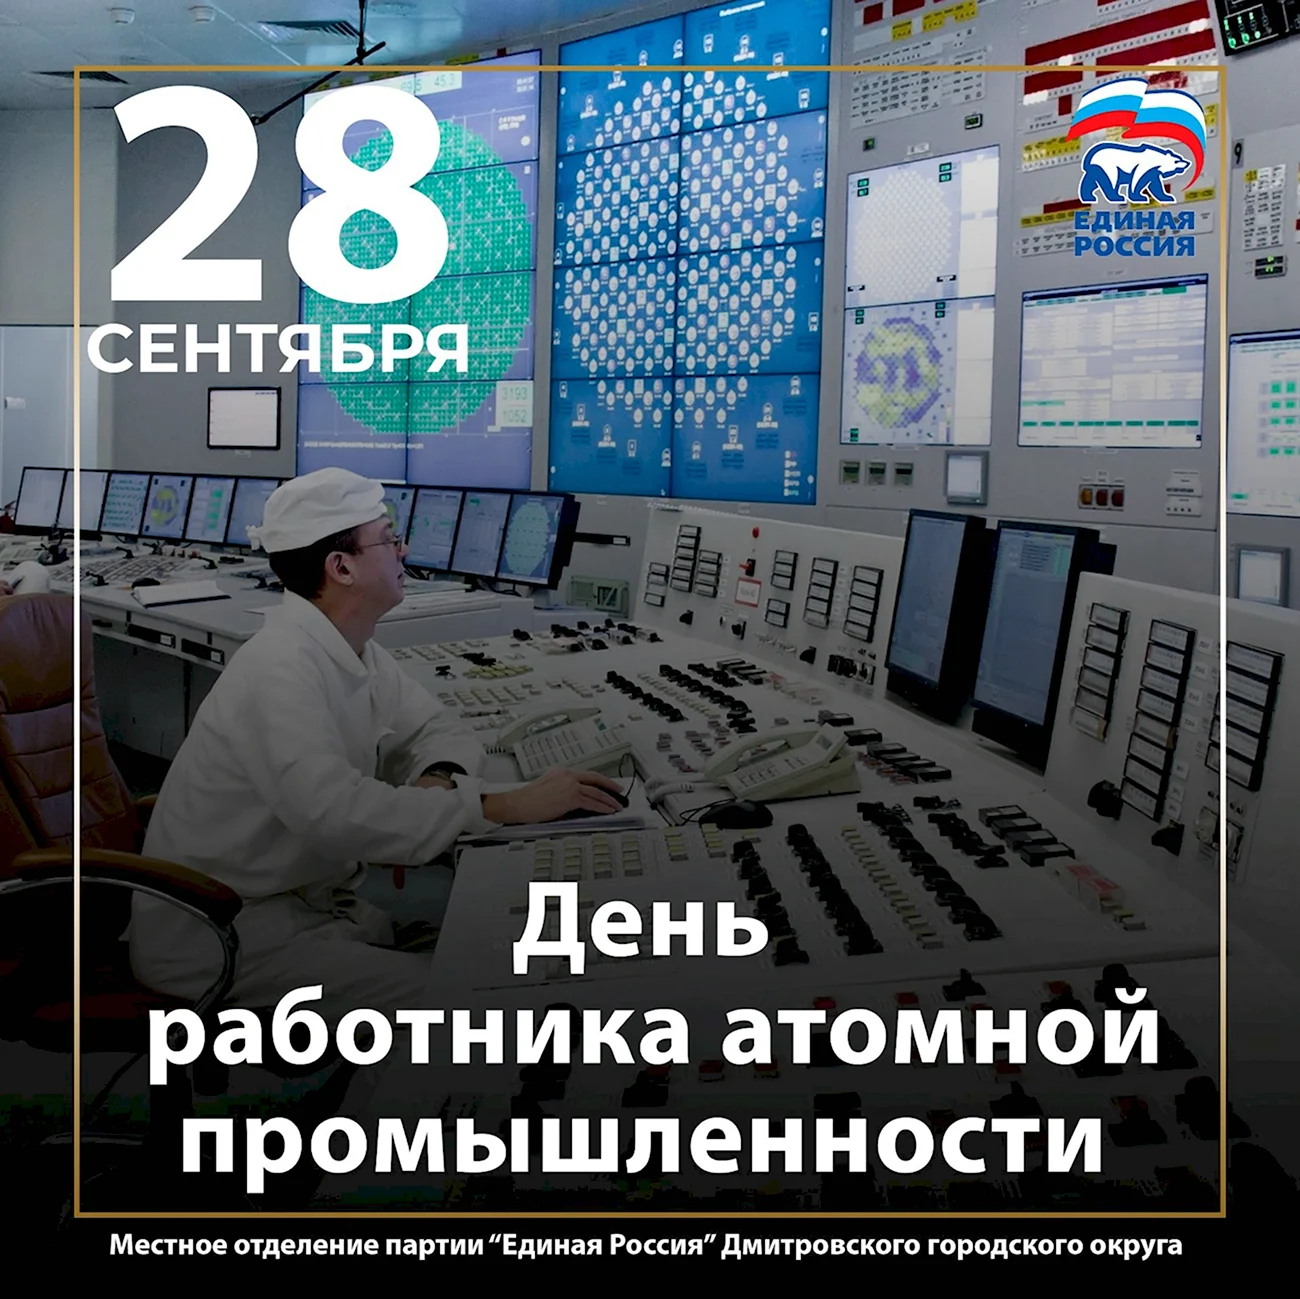 Атомная промышленность России. Поздравление